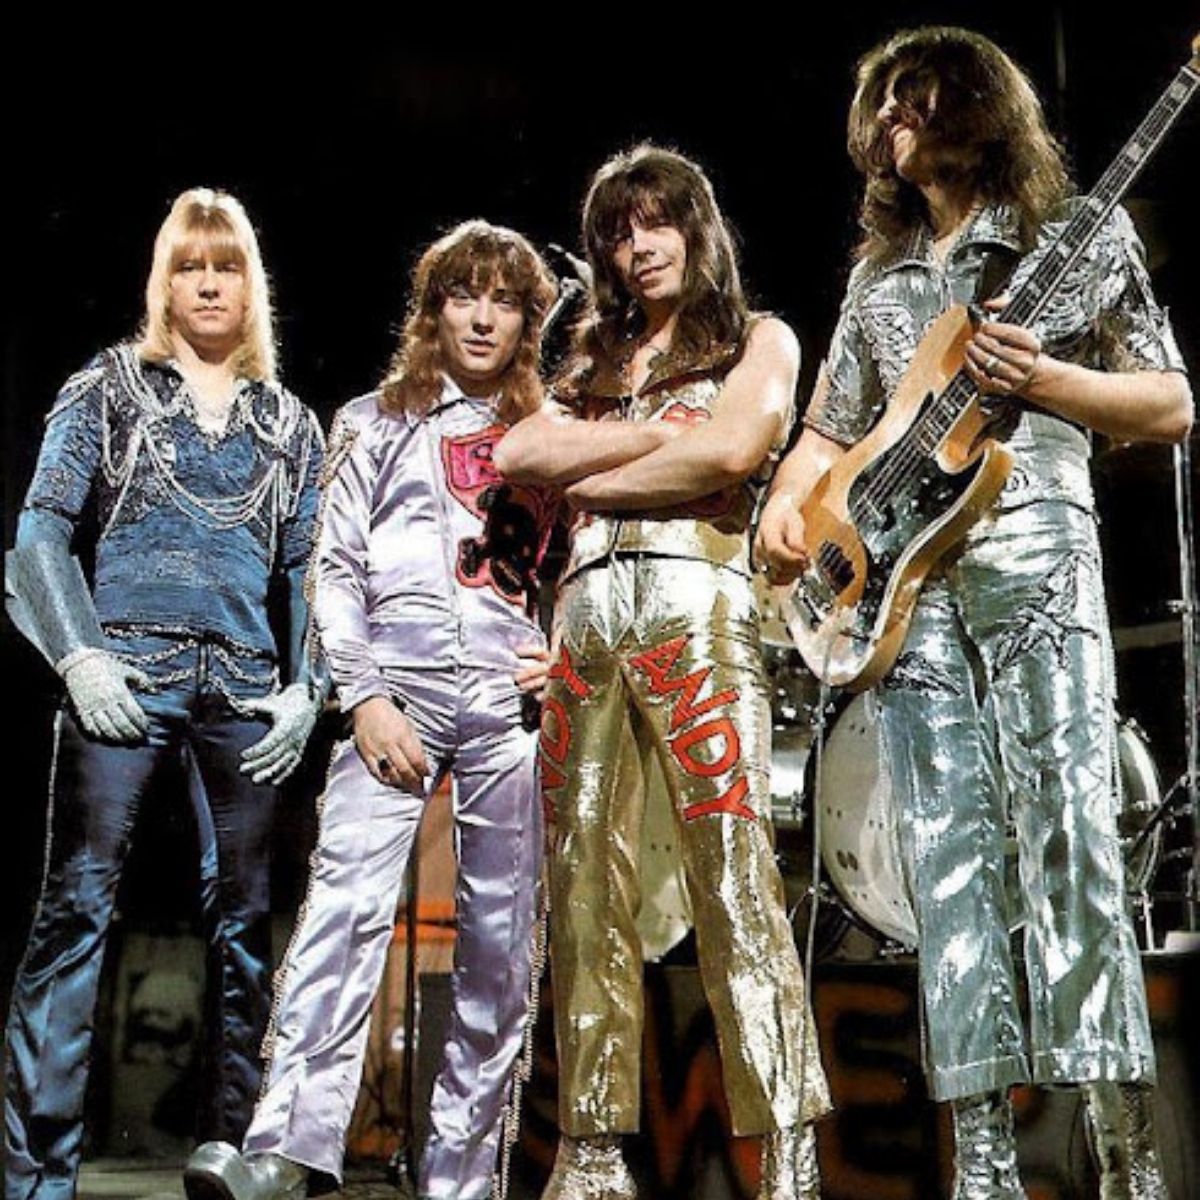 Le Sweet Band dans les années 80